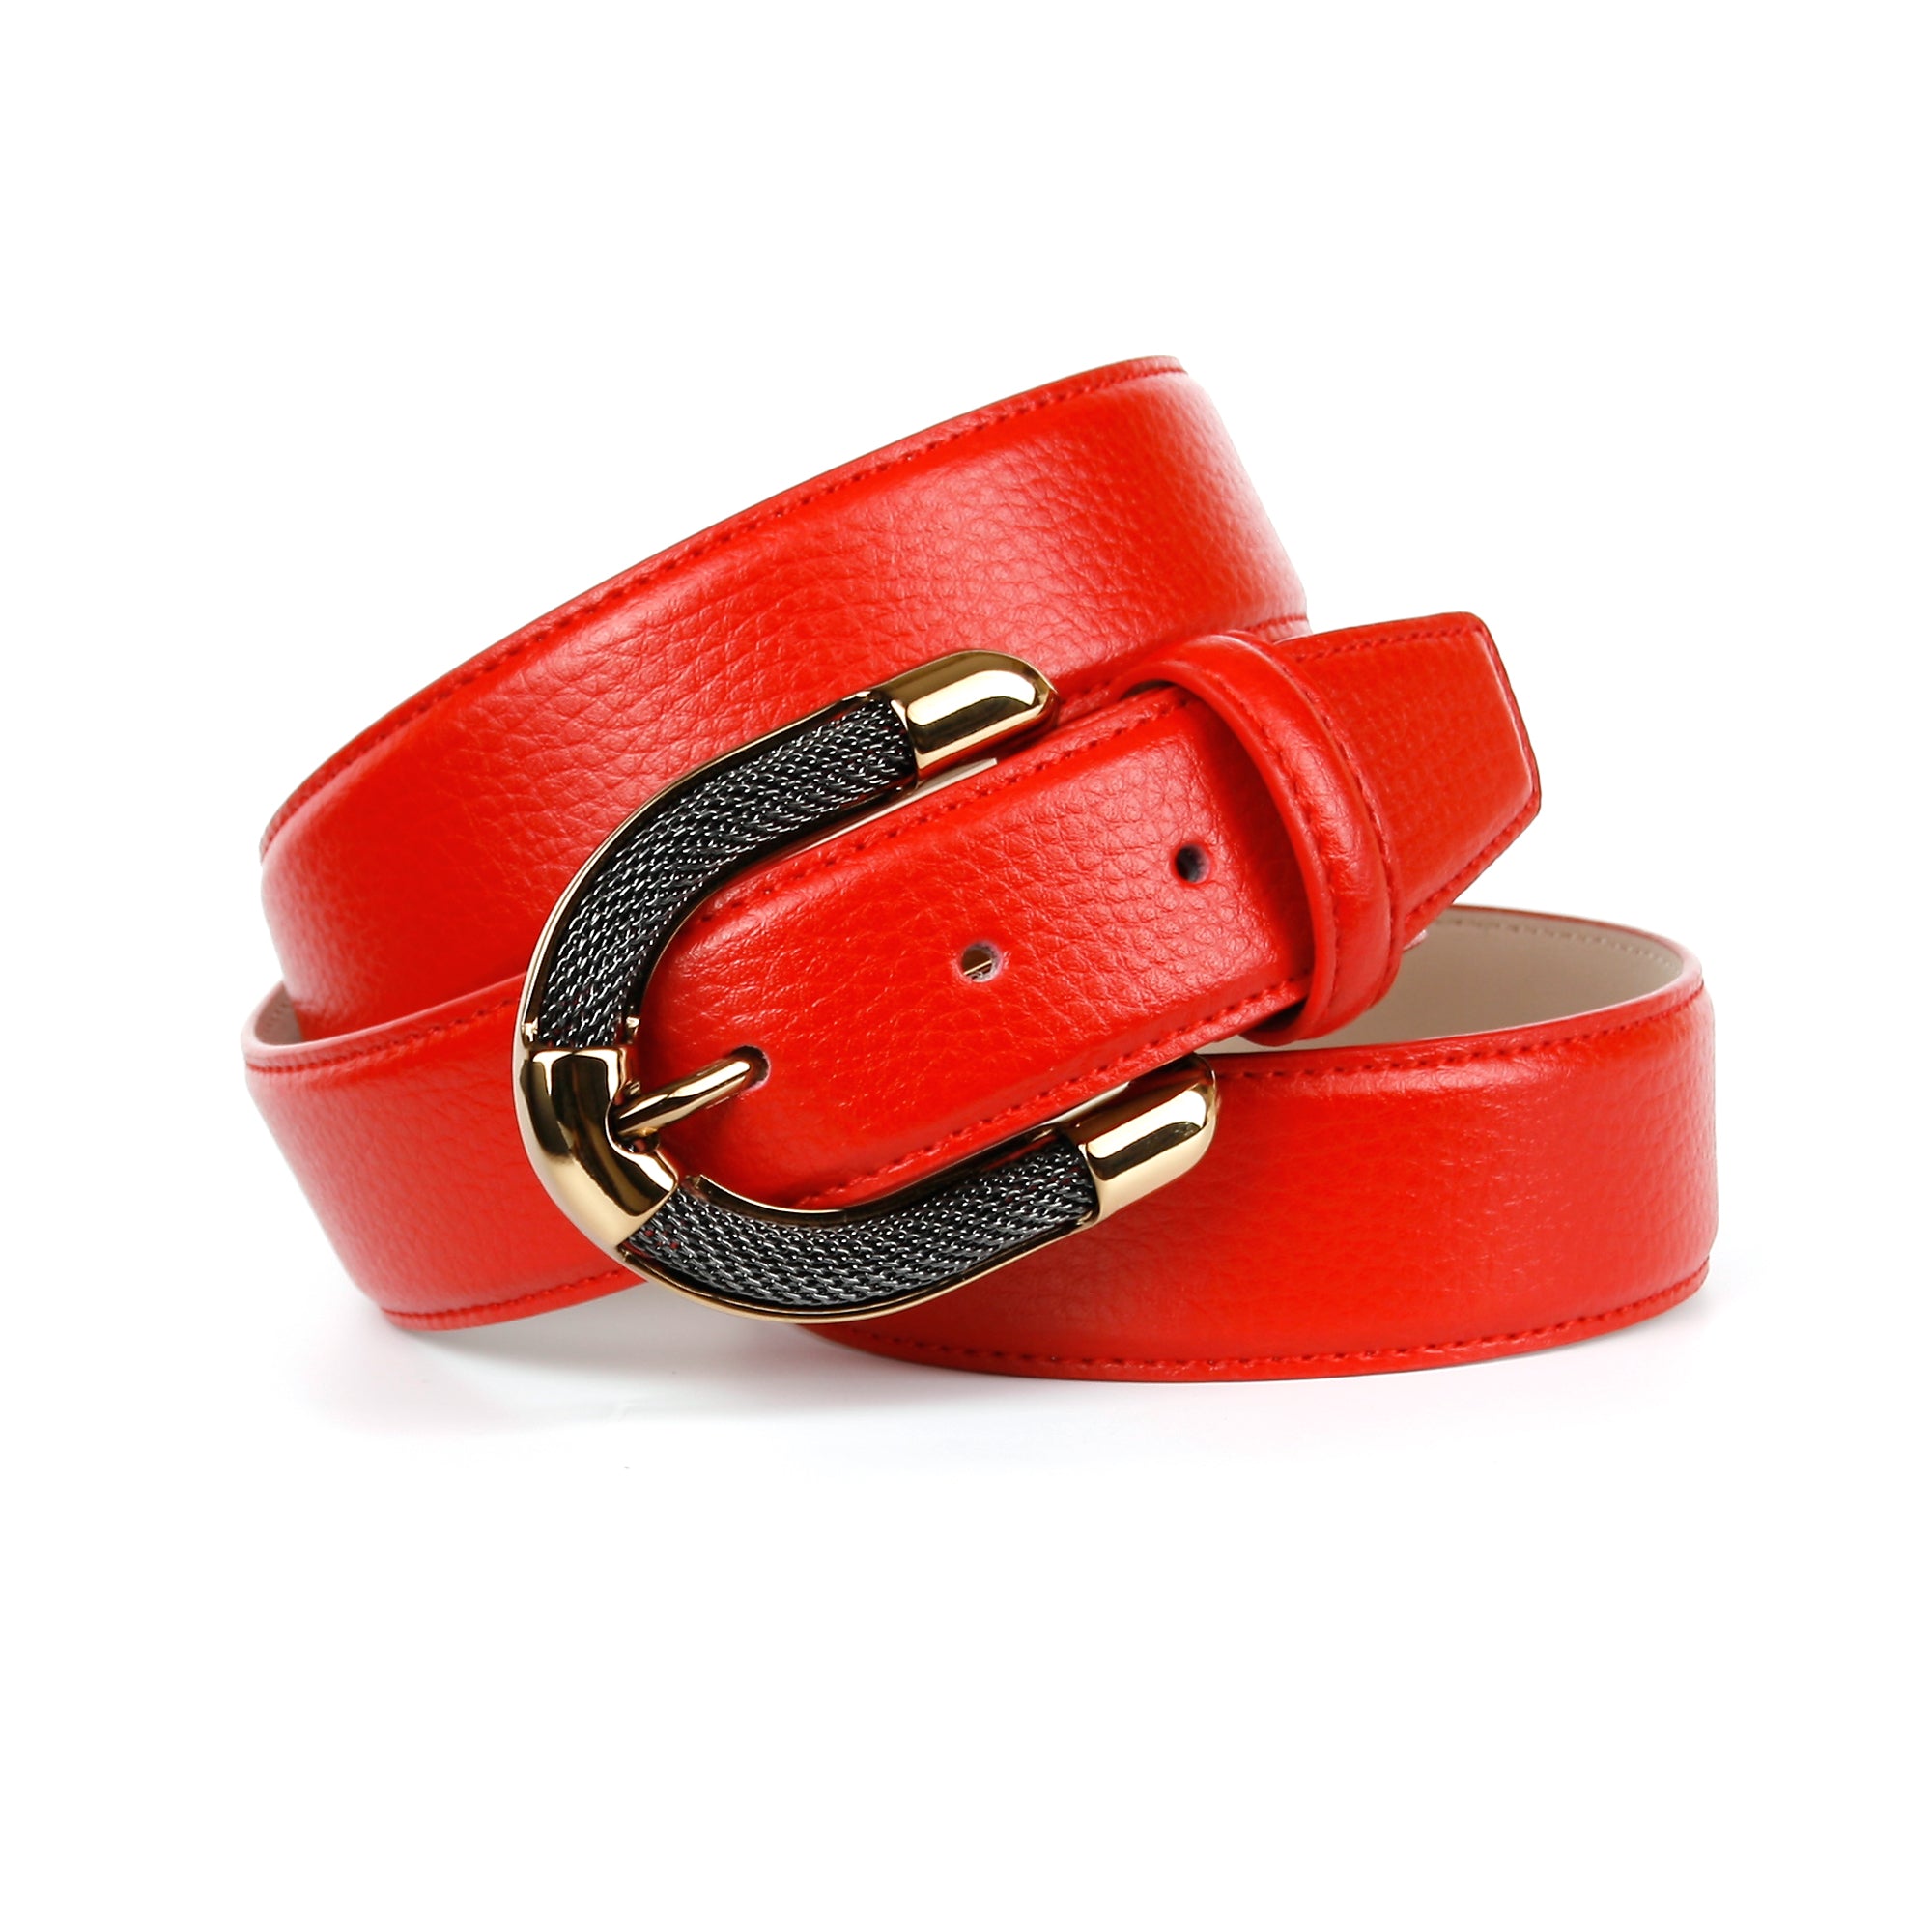 Femininer Ledergürtel in anthonicrown mit Schmuck-Schließe – Rot aufwendiger